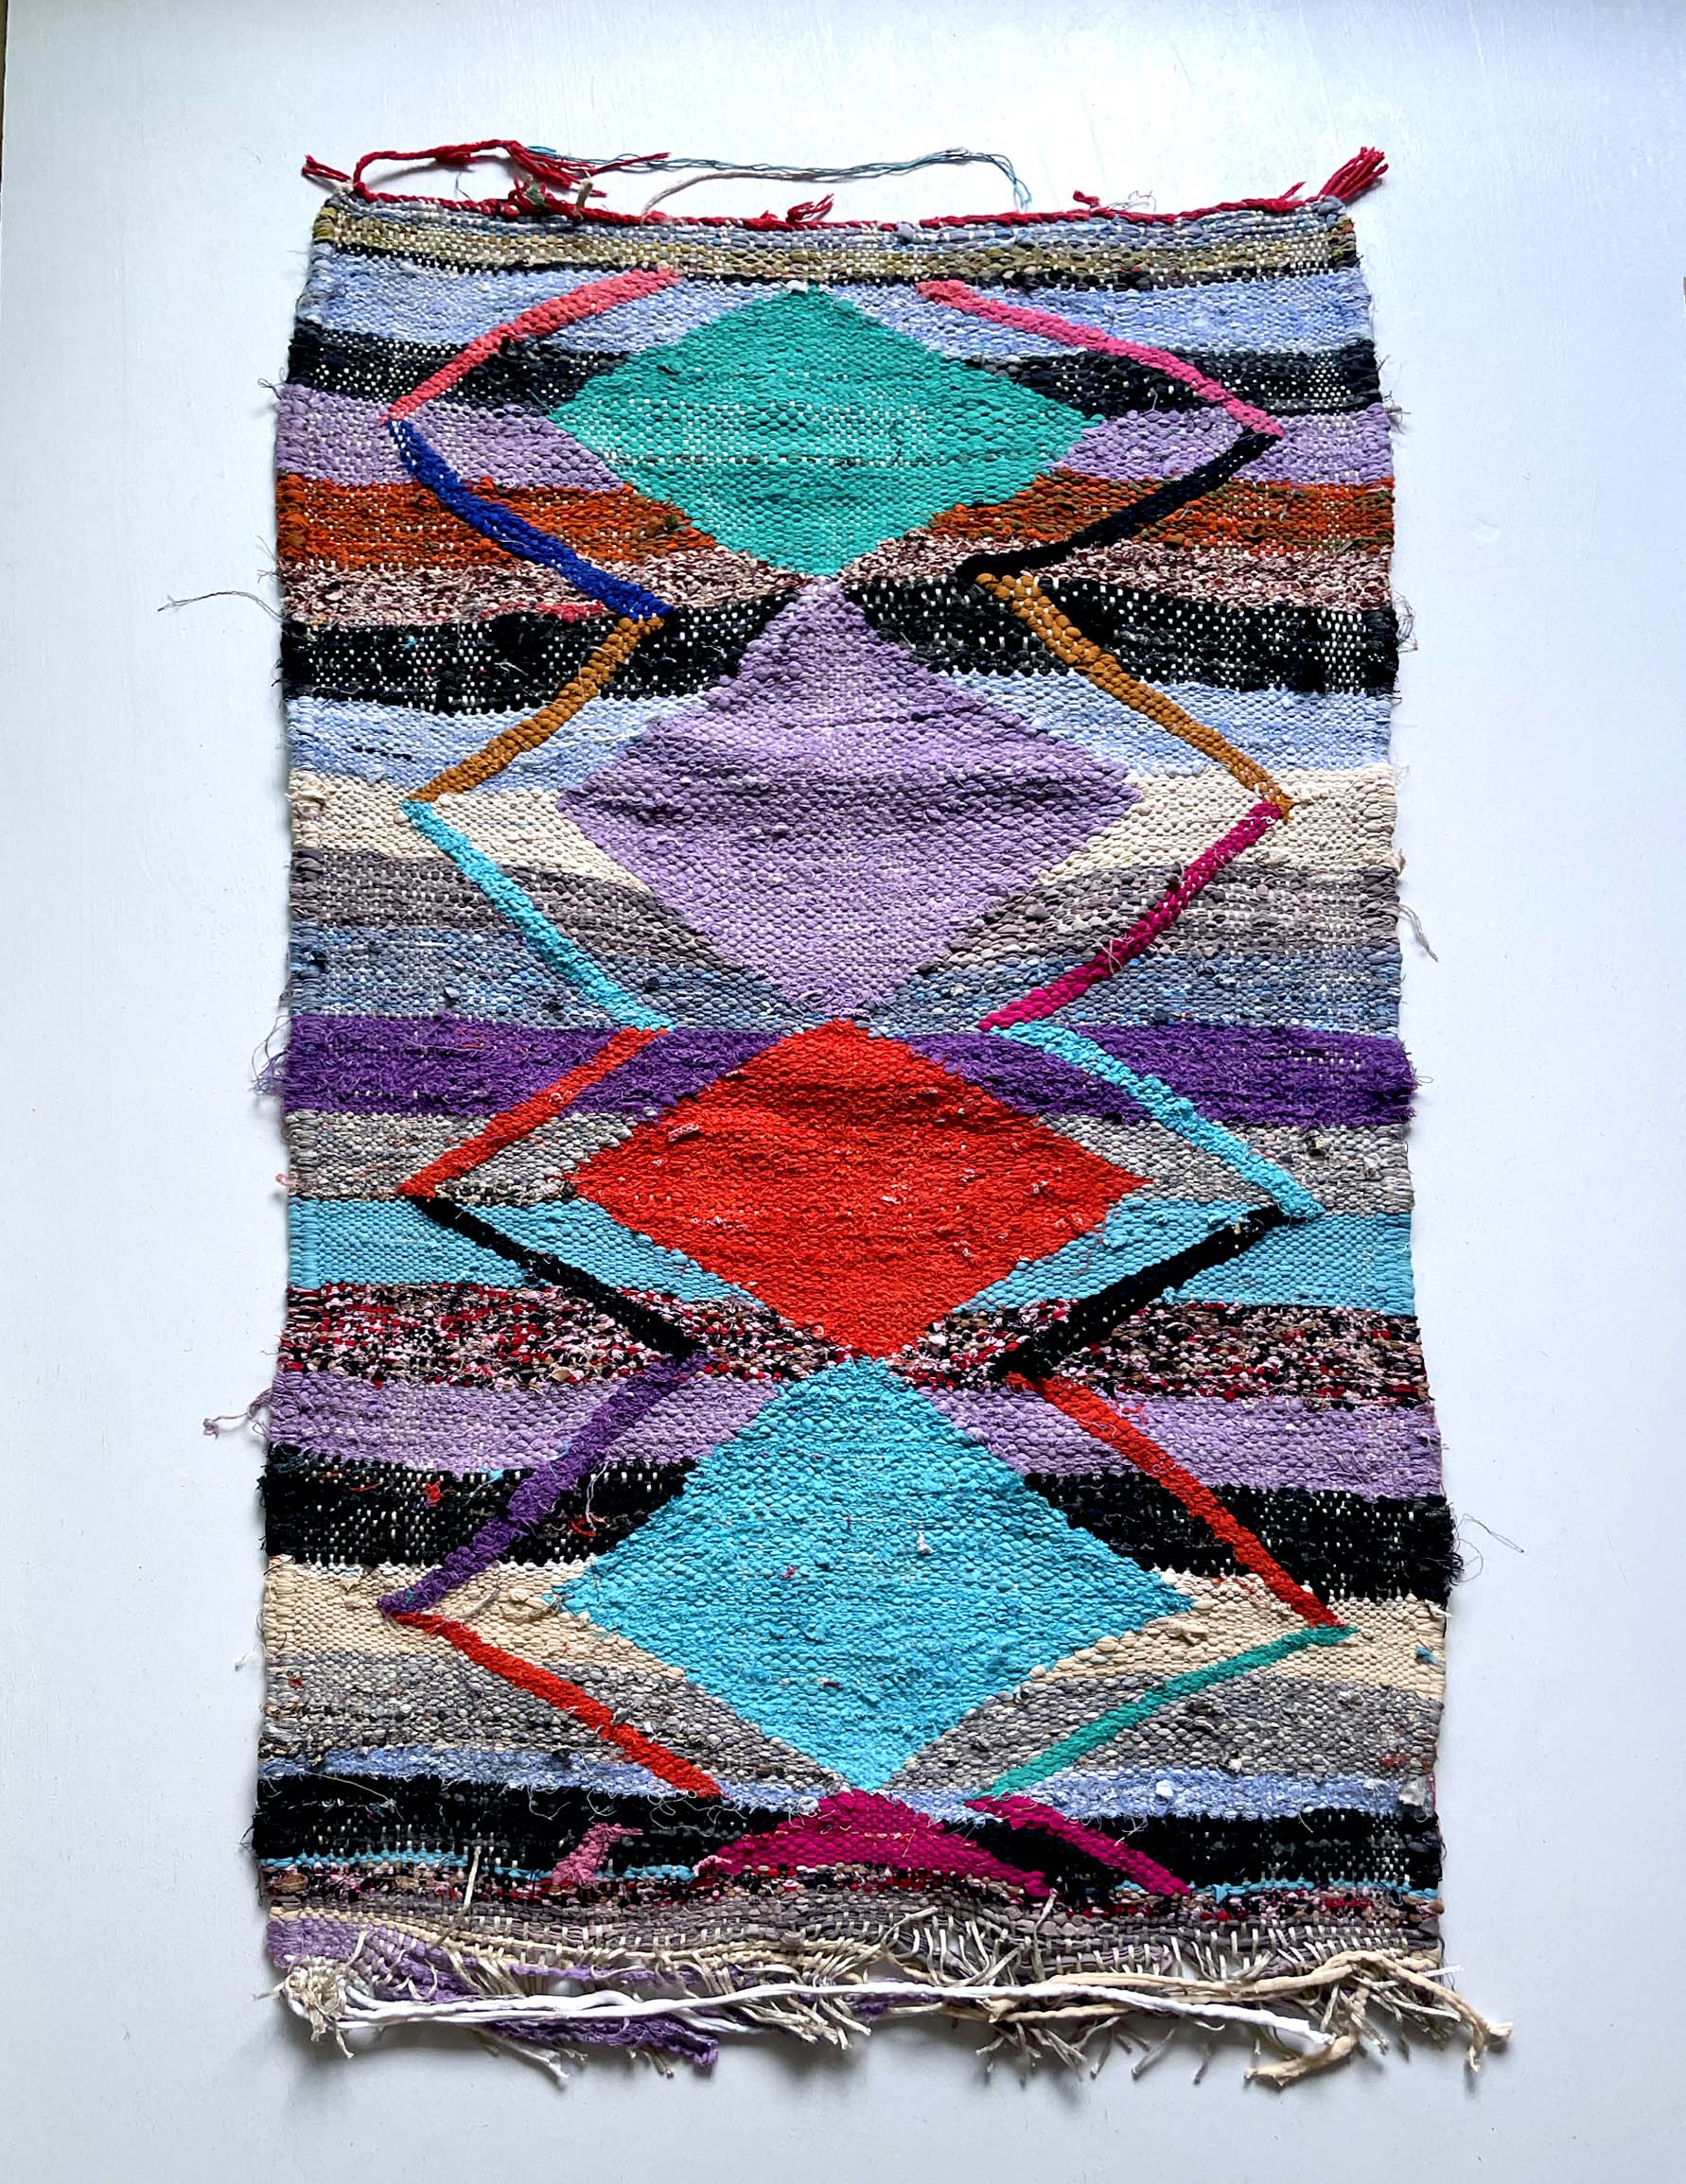 Boucherouite rug